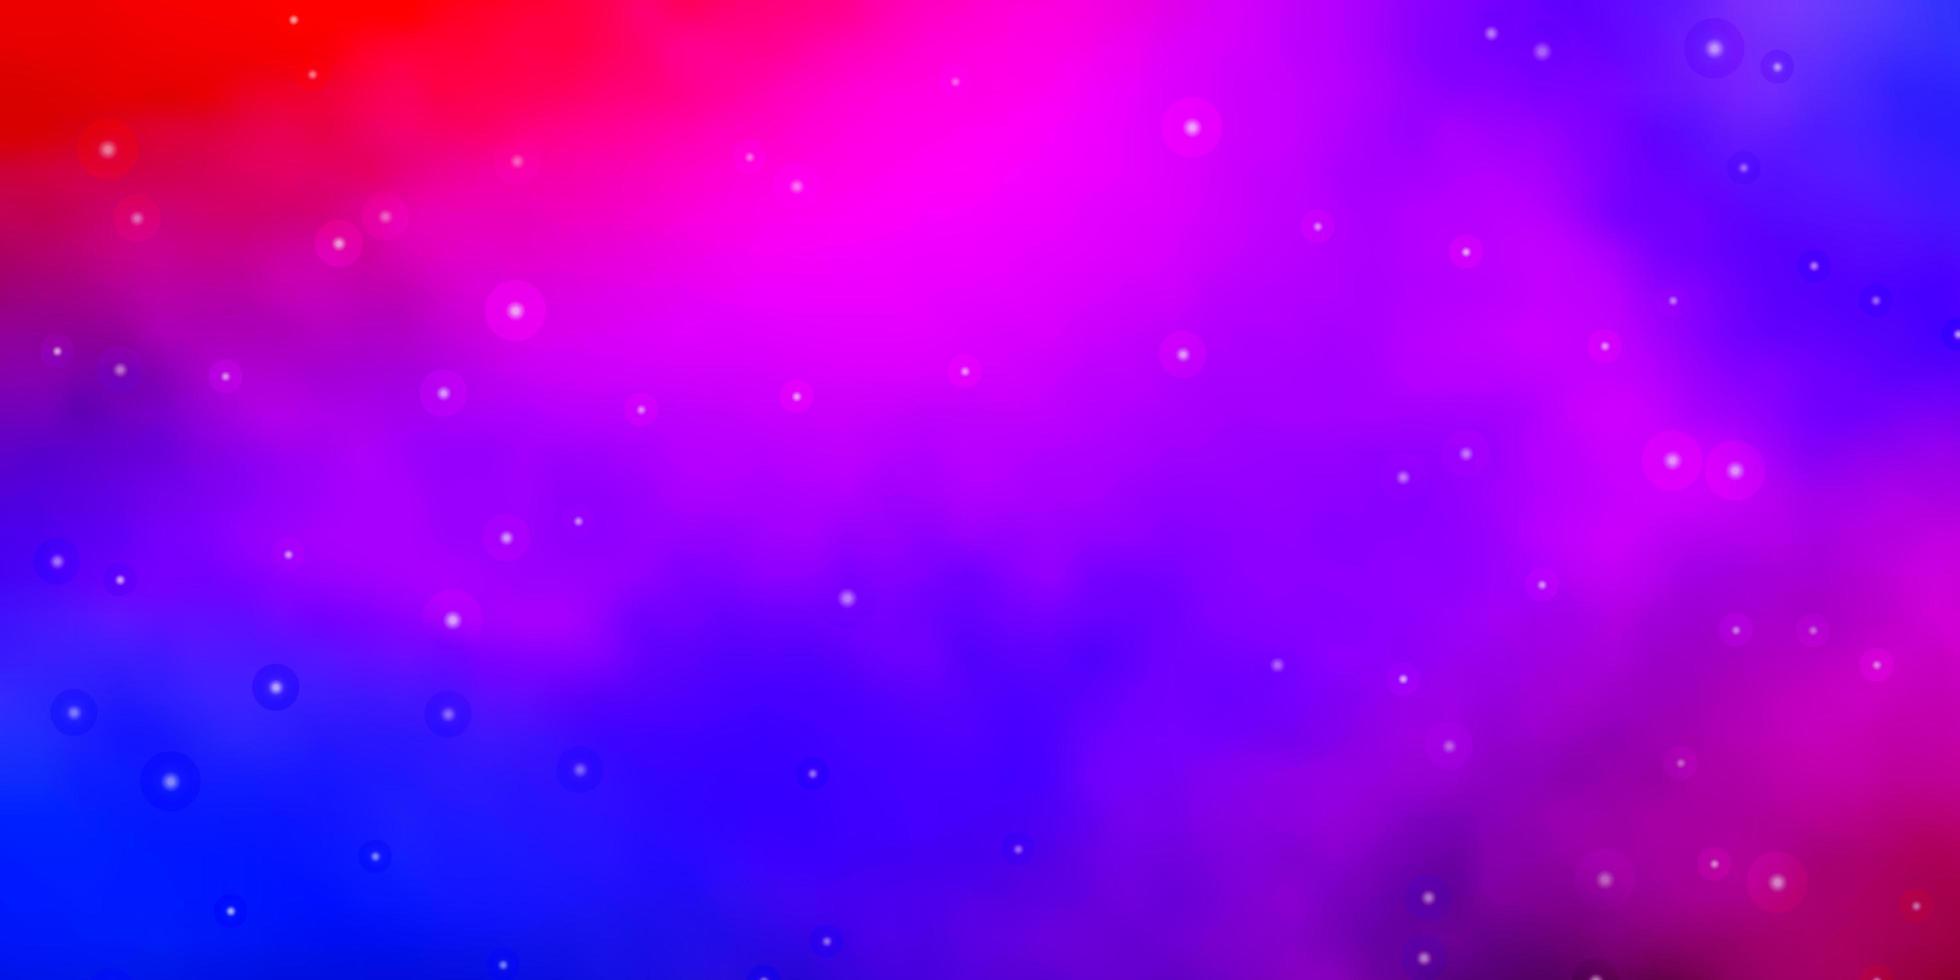 fundo vector azul e vermelho claro com estrelas pequenas e grandes.